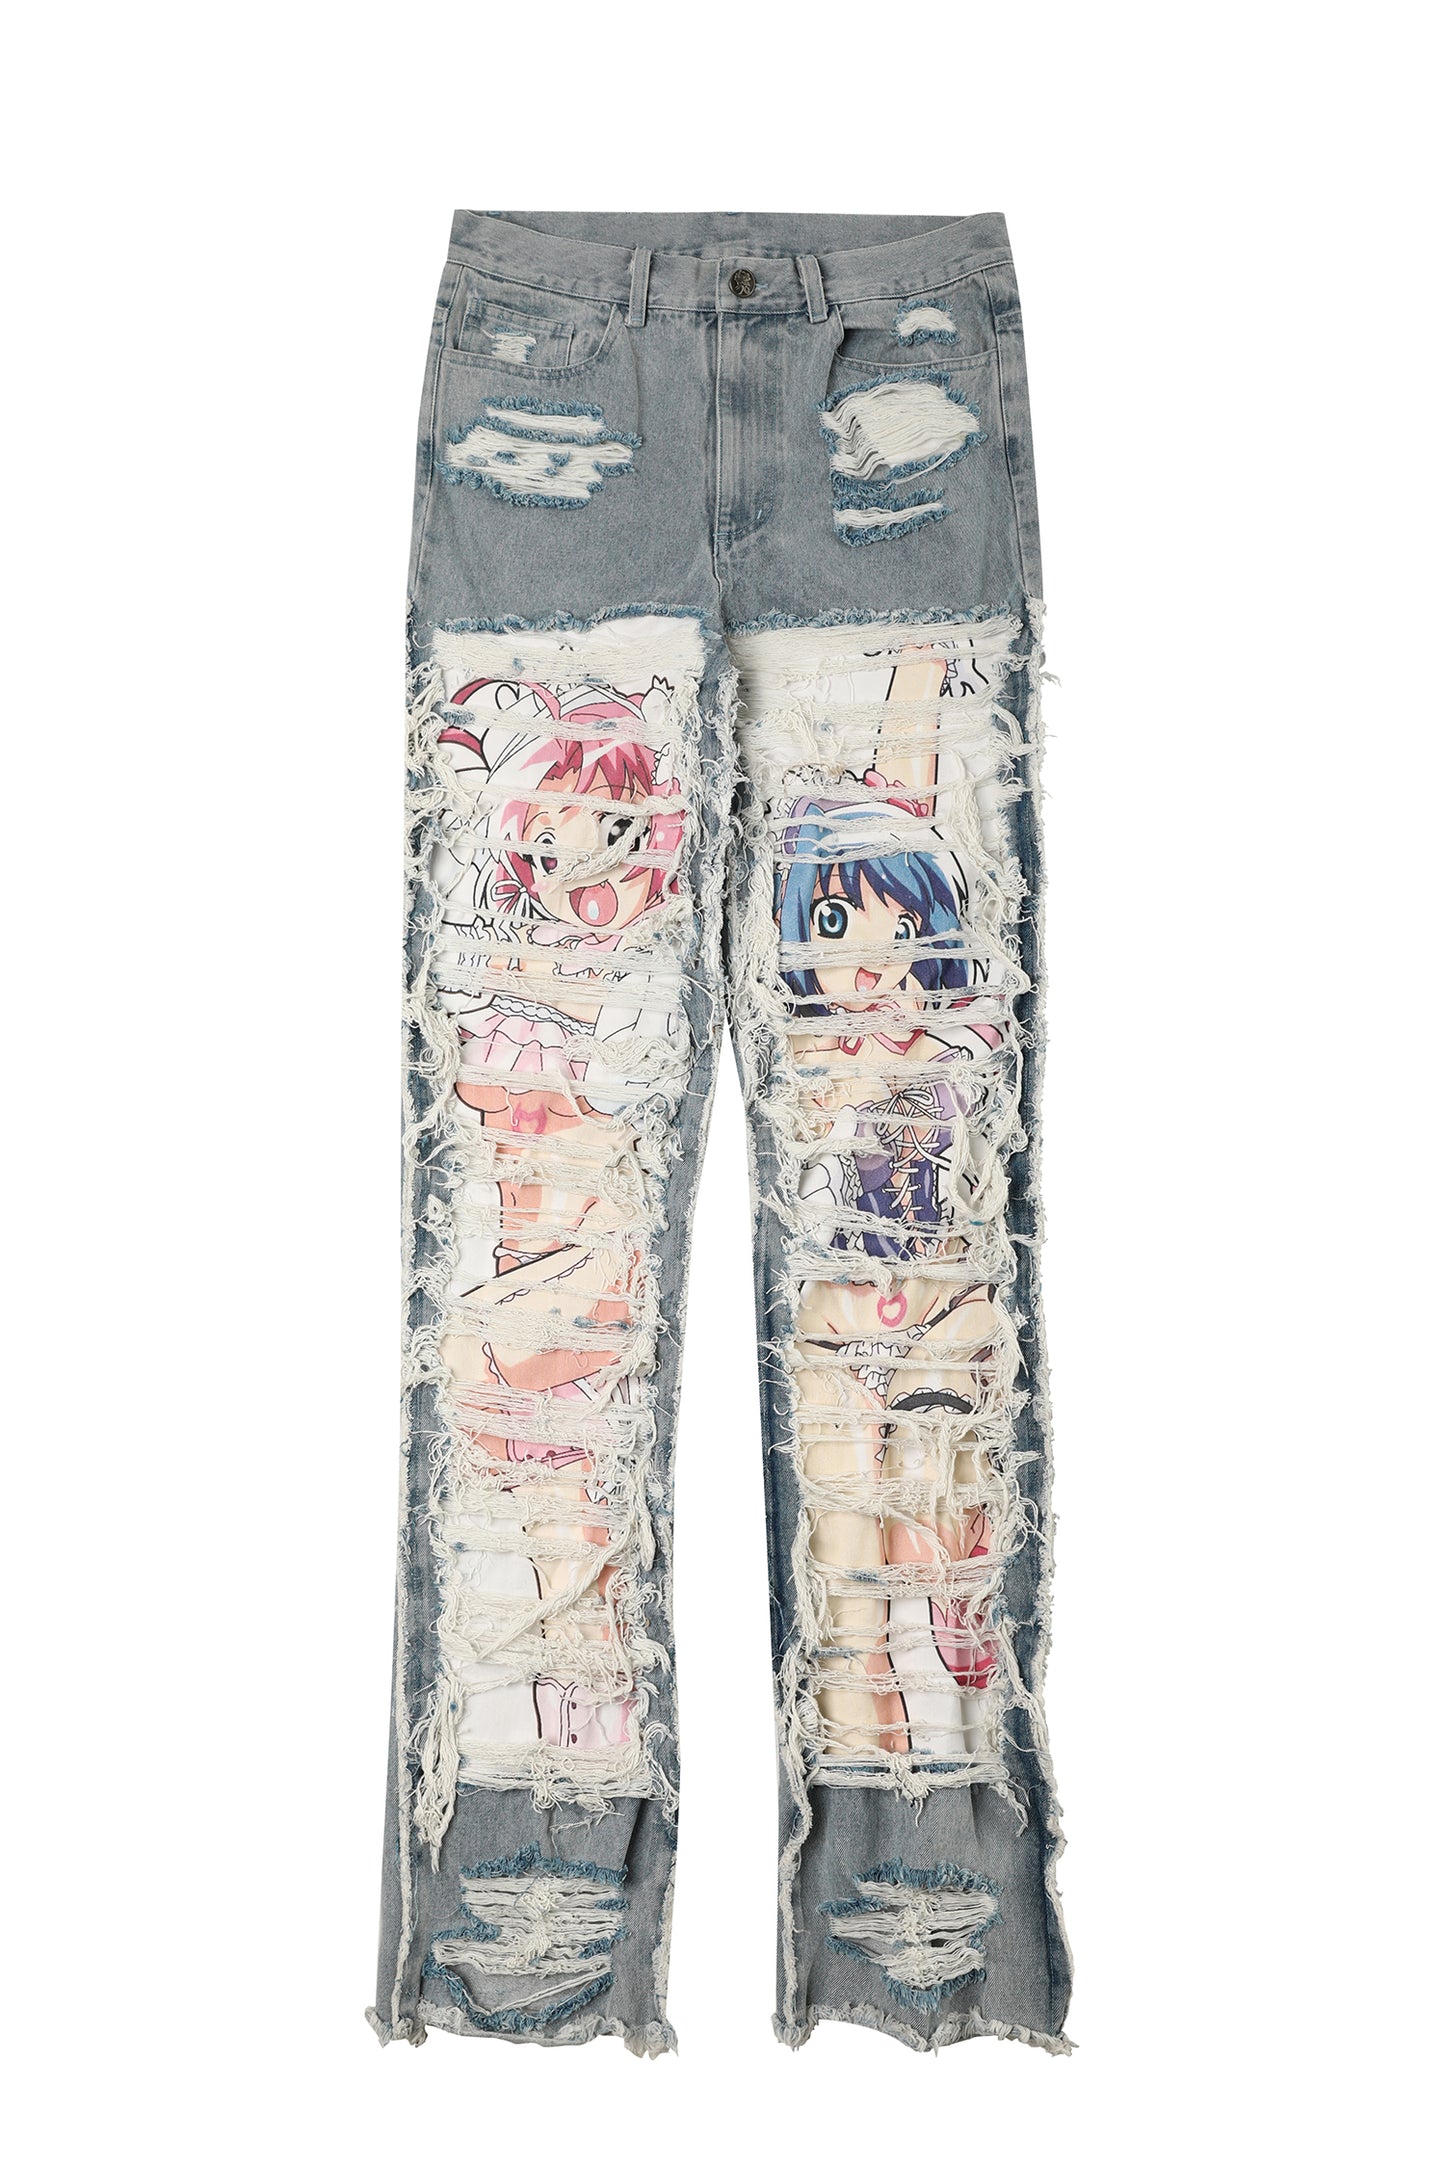 AONE4SURE x ILOVEUIHATEU Anime Twins Jeans